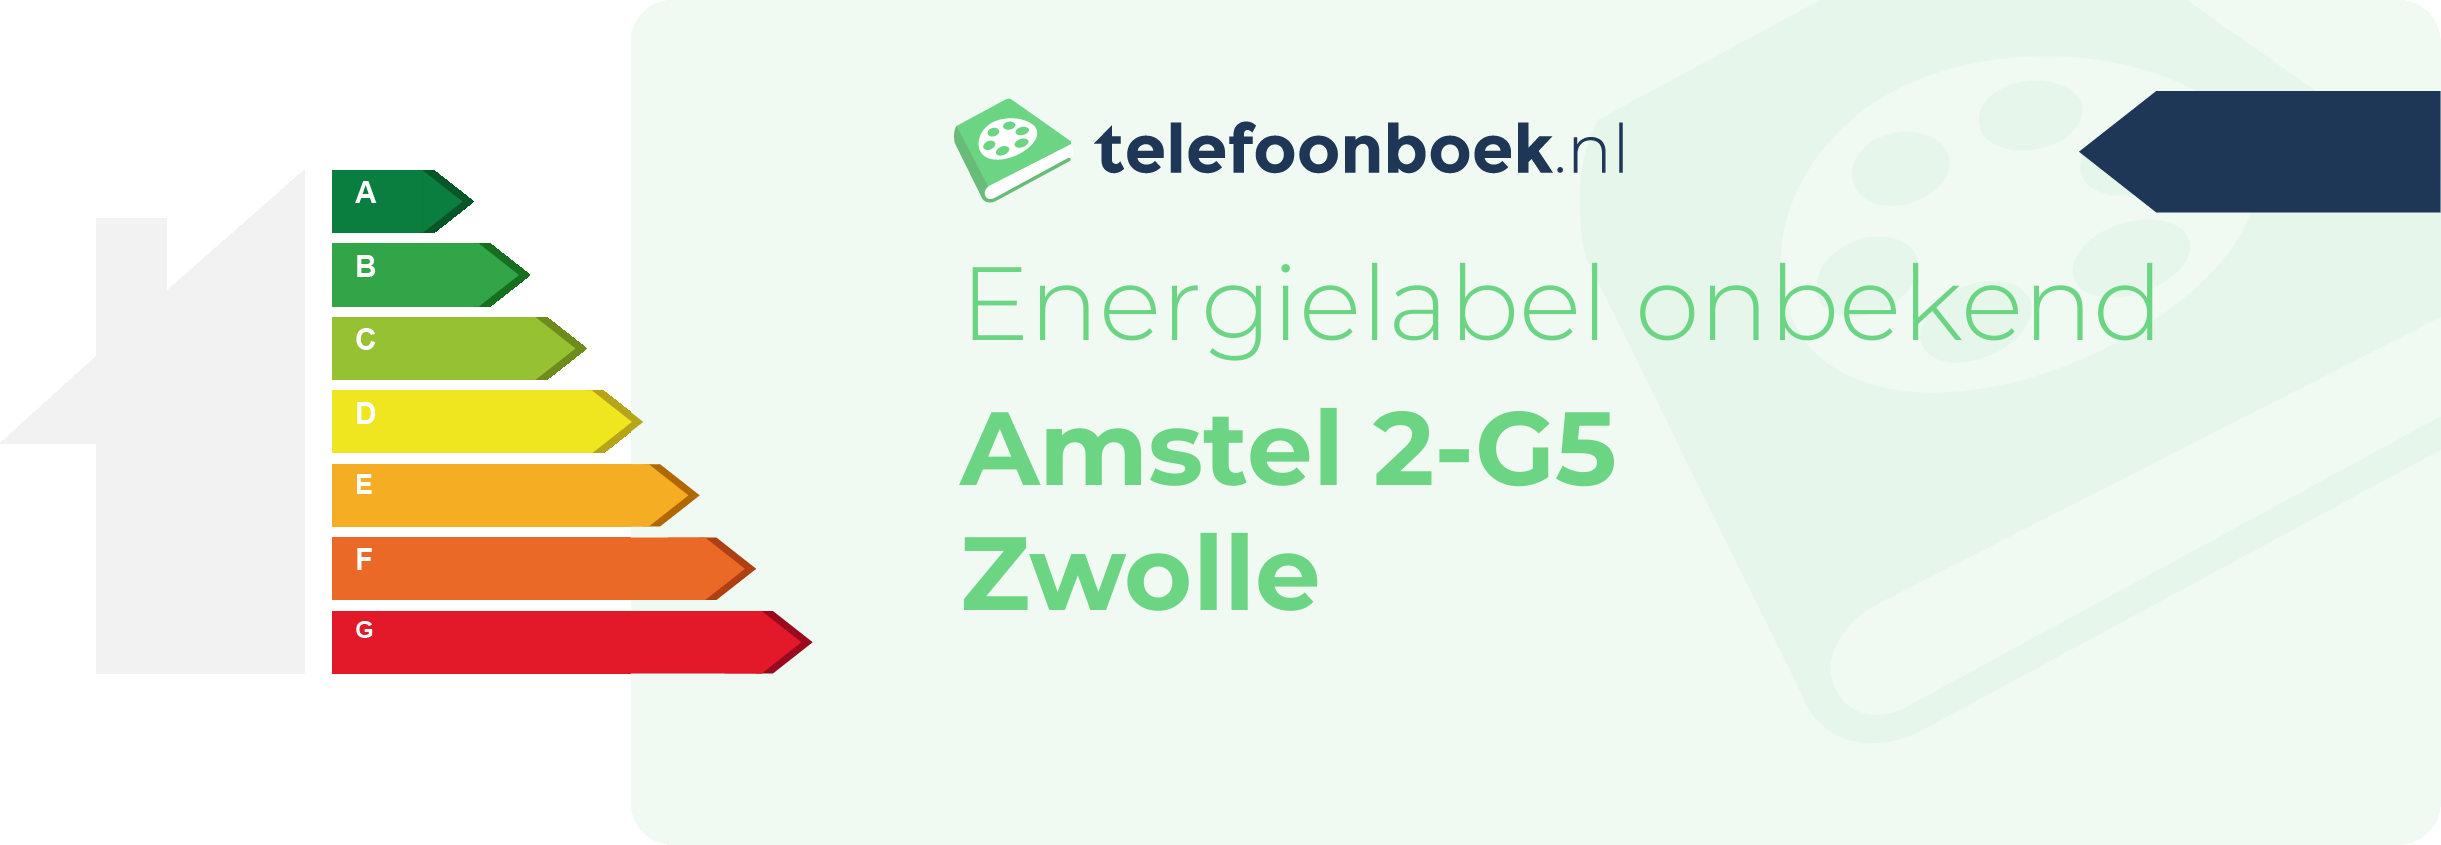 Energielabel Amstel 2-G5 Zwolle